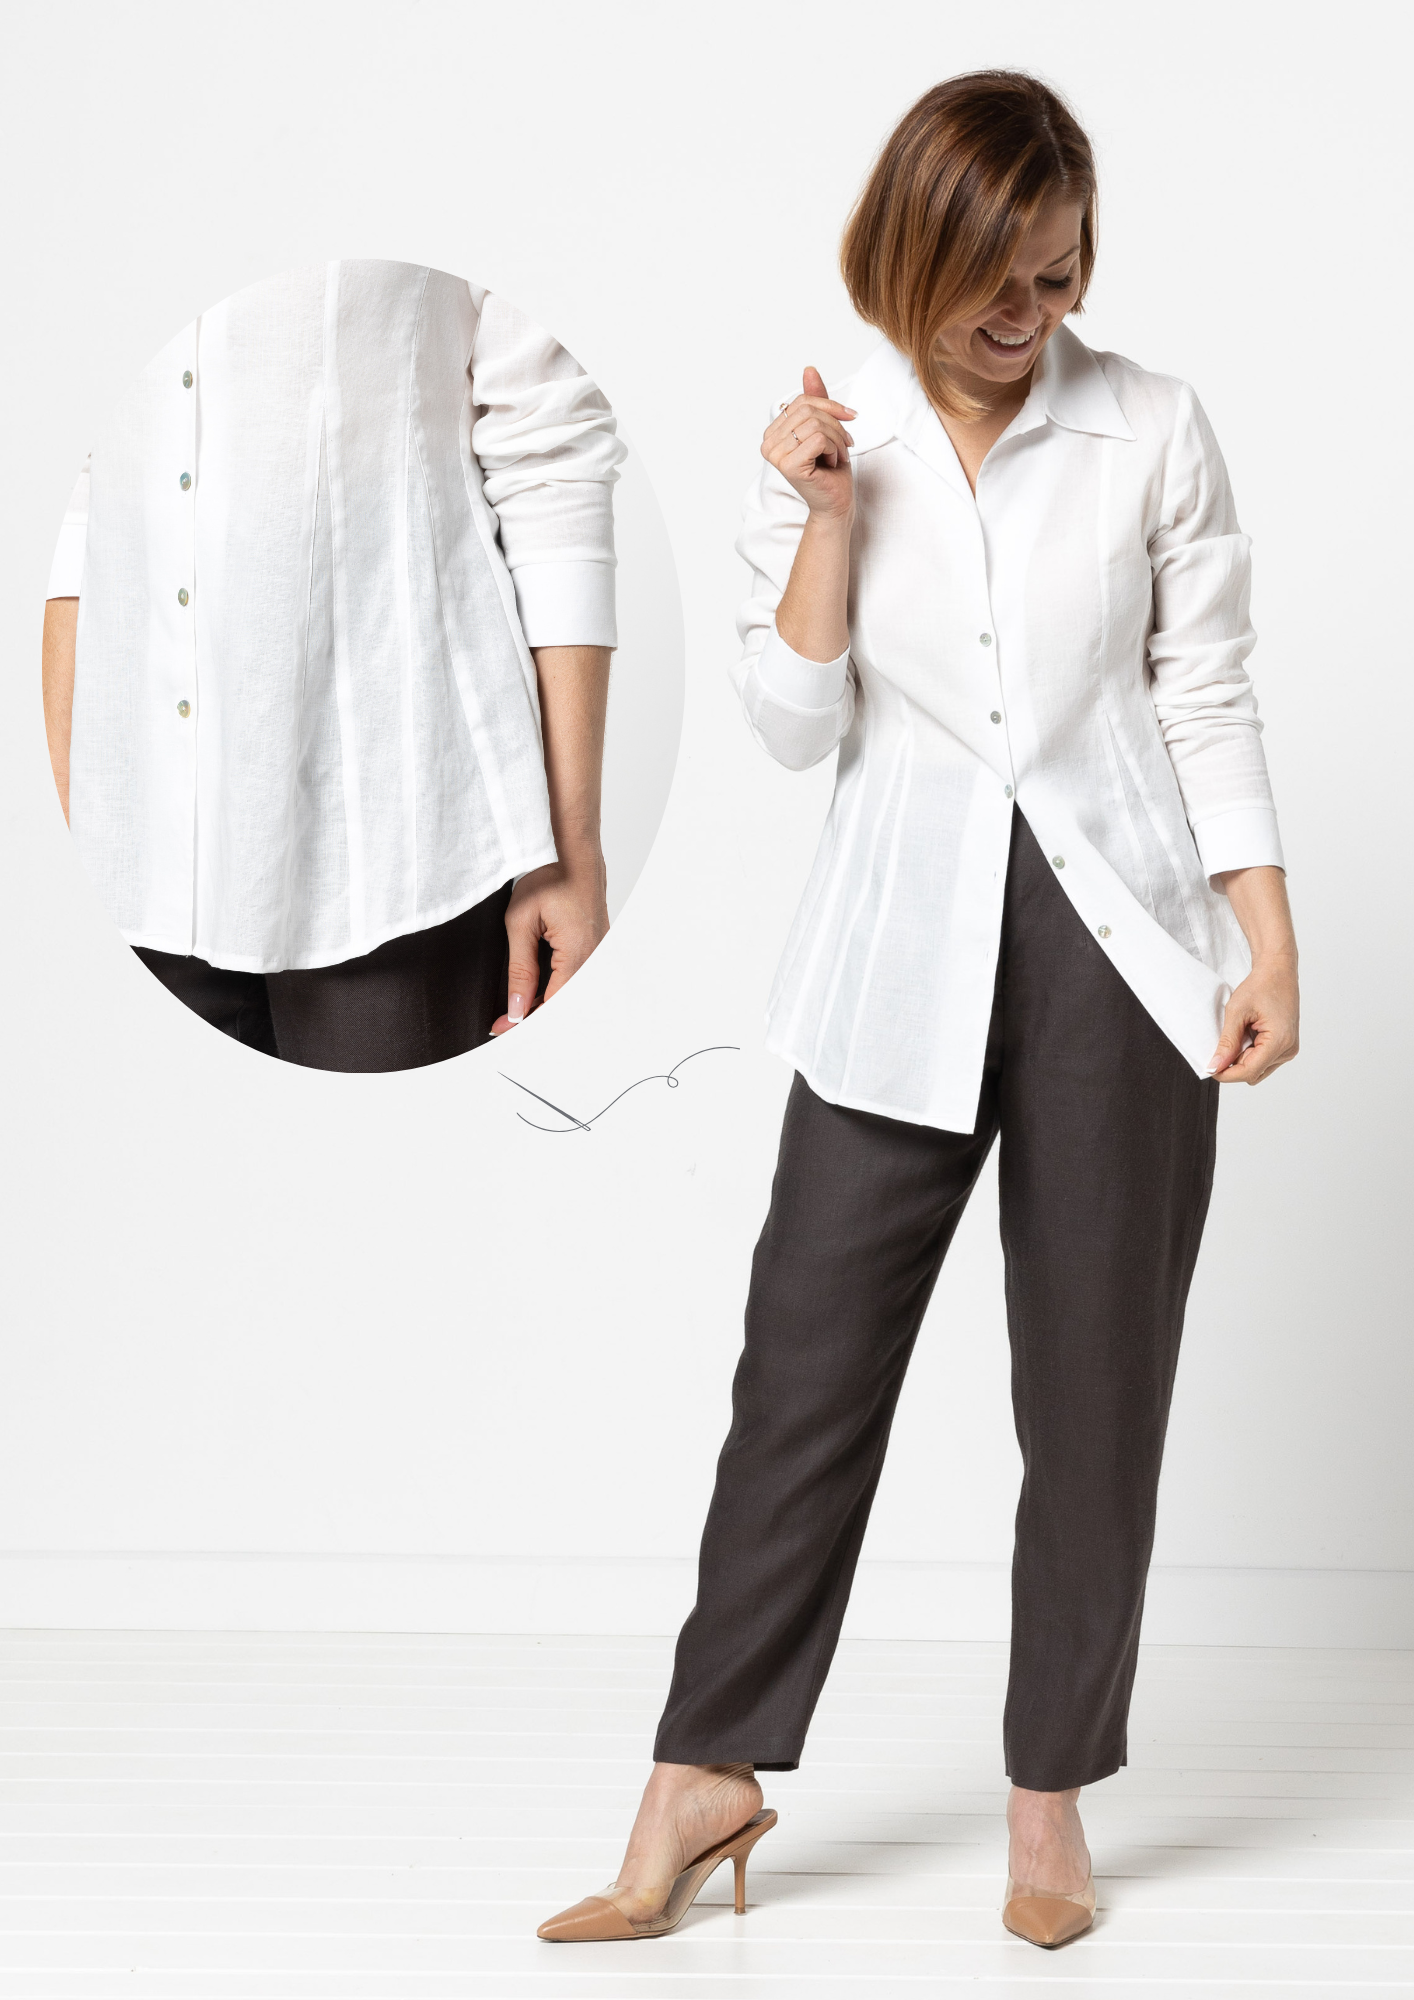 Celeste Woven Shirt & Claude Woven Pant Patterns